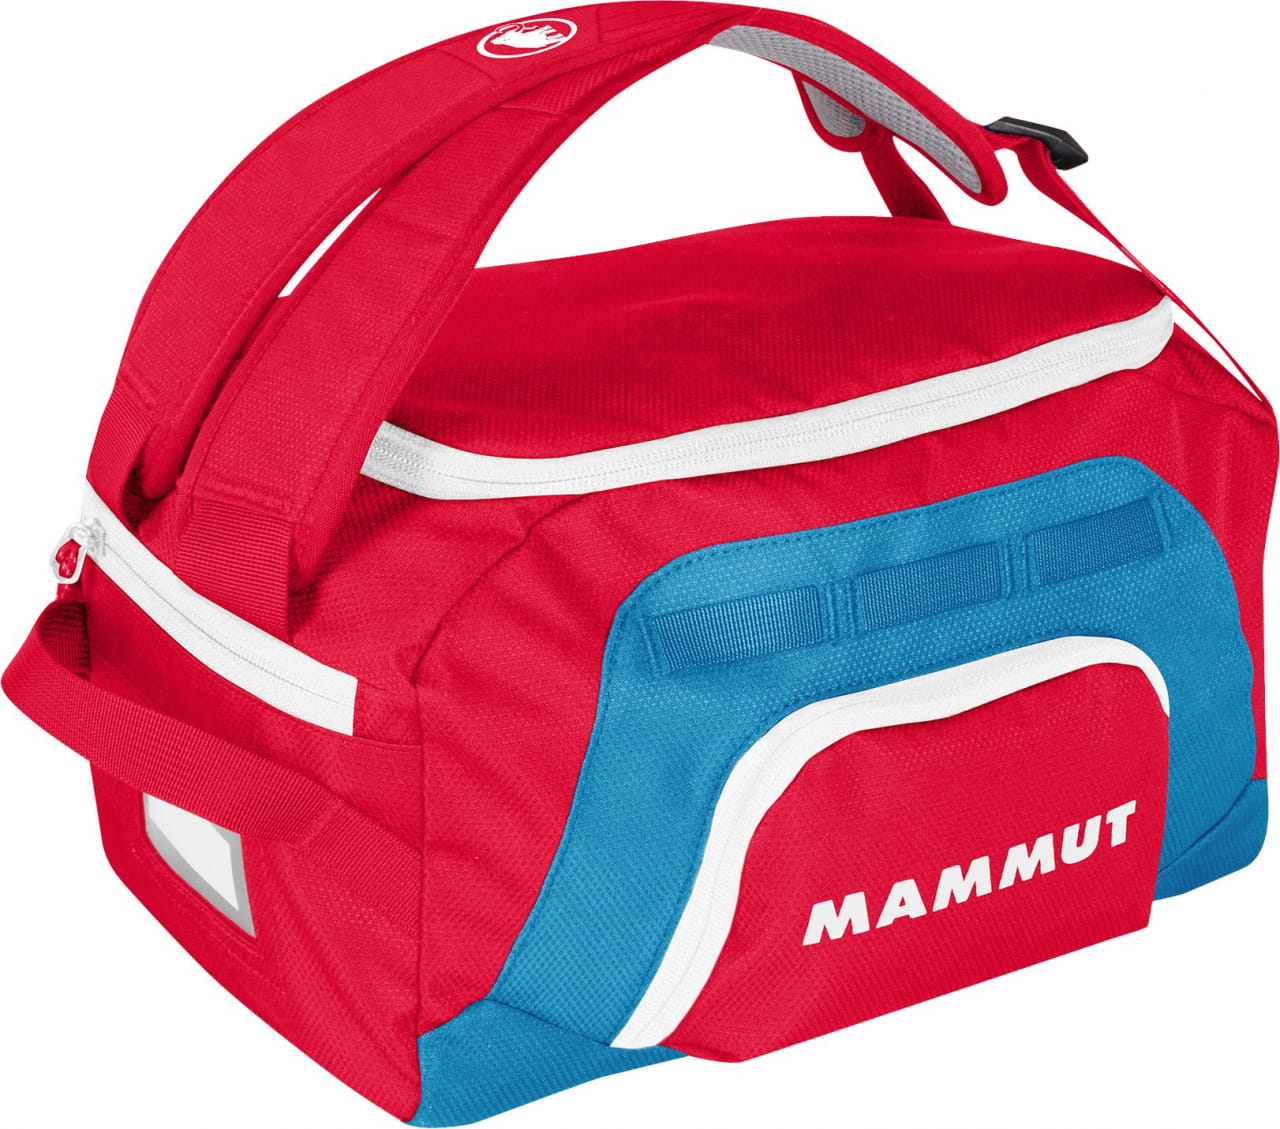 Cestovní taška pro děti Mammut First Cargo, 18 l